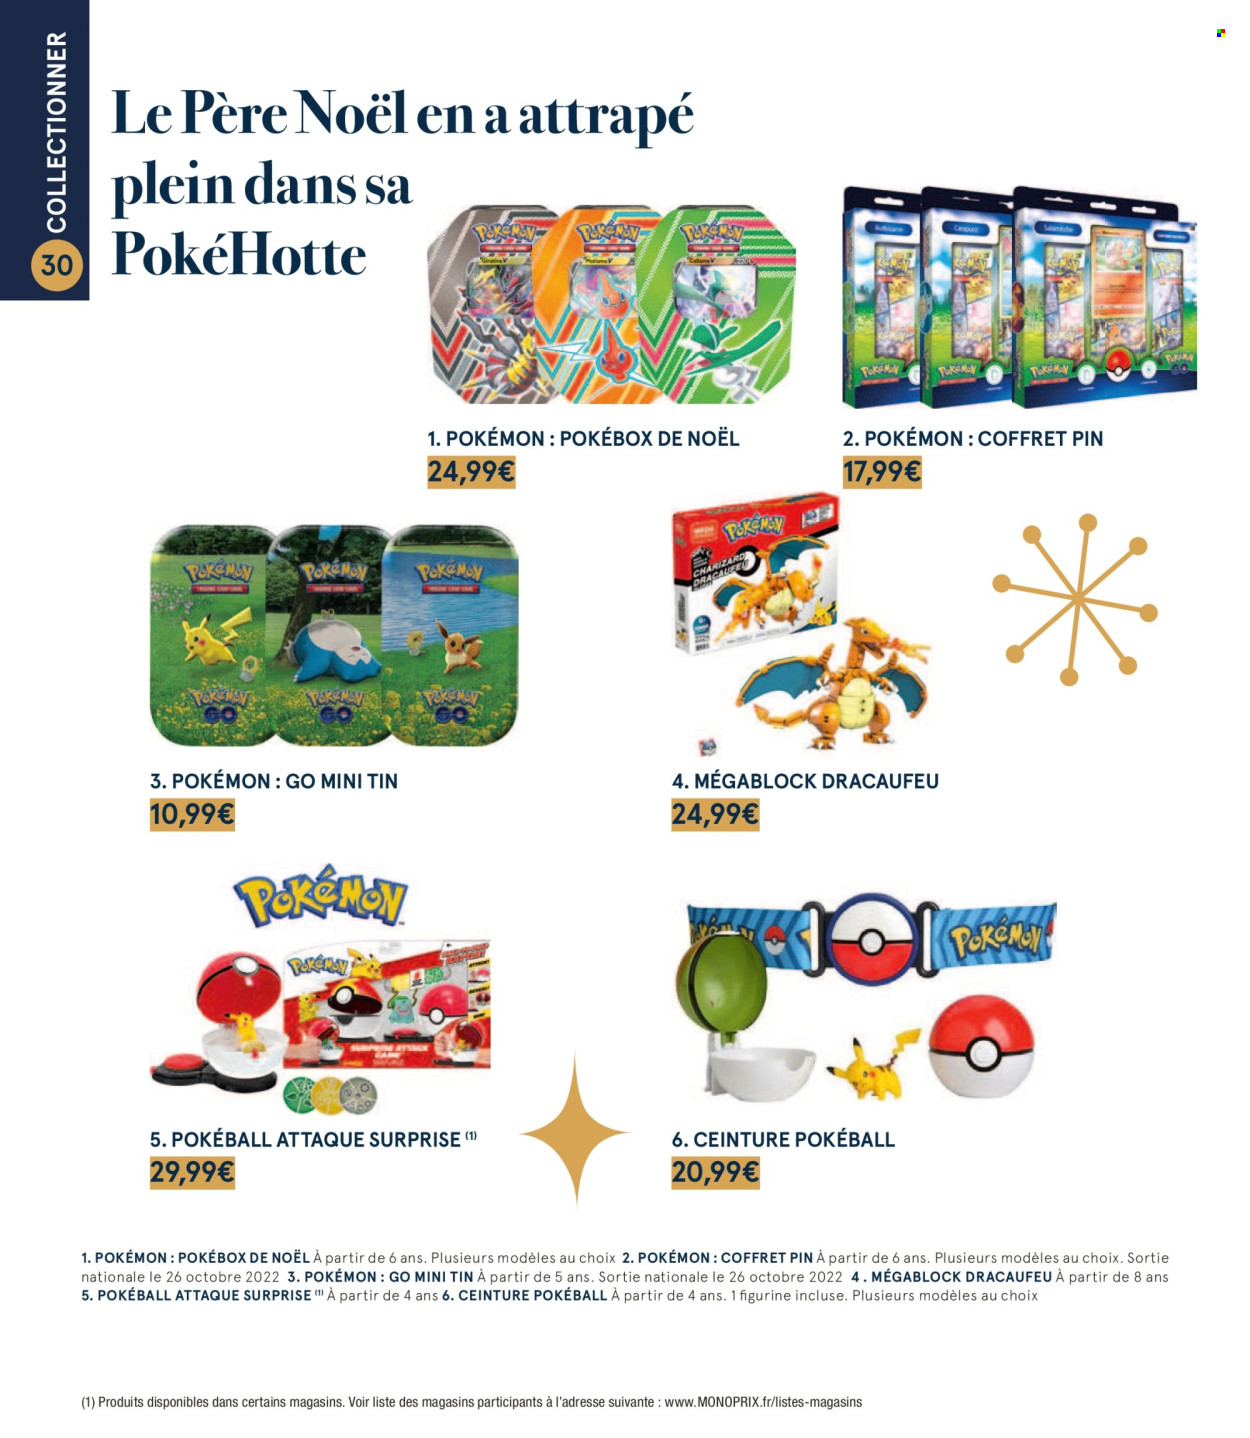 thumbnail - Catalogue Monoprix - 20/10/2022 - 31/12/2022 - Produits soldés - Pokémon, père noël, coffret, ceinture, Pokeball. Page 30.